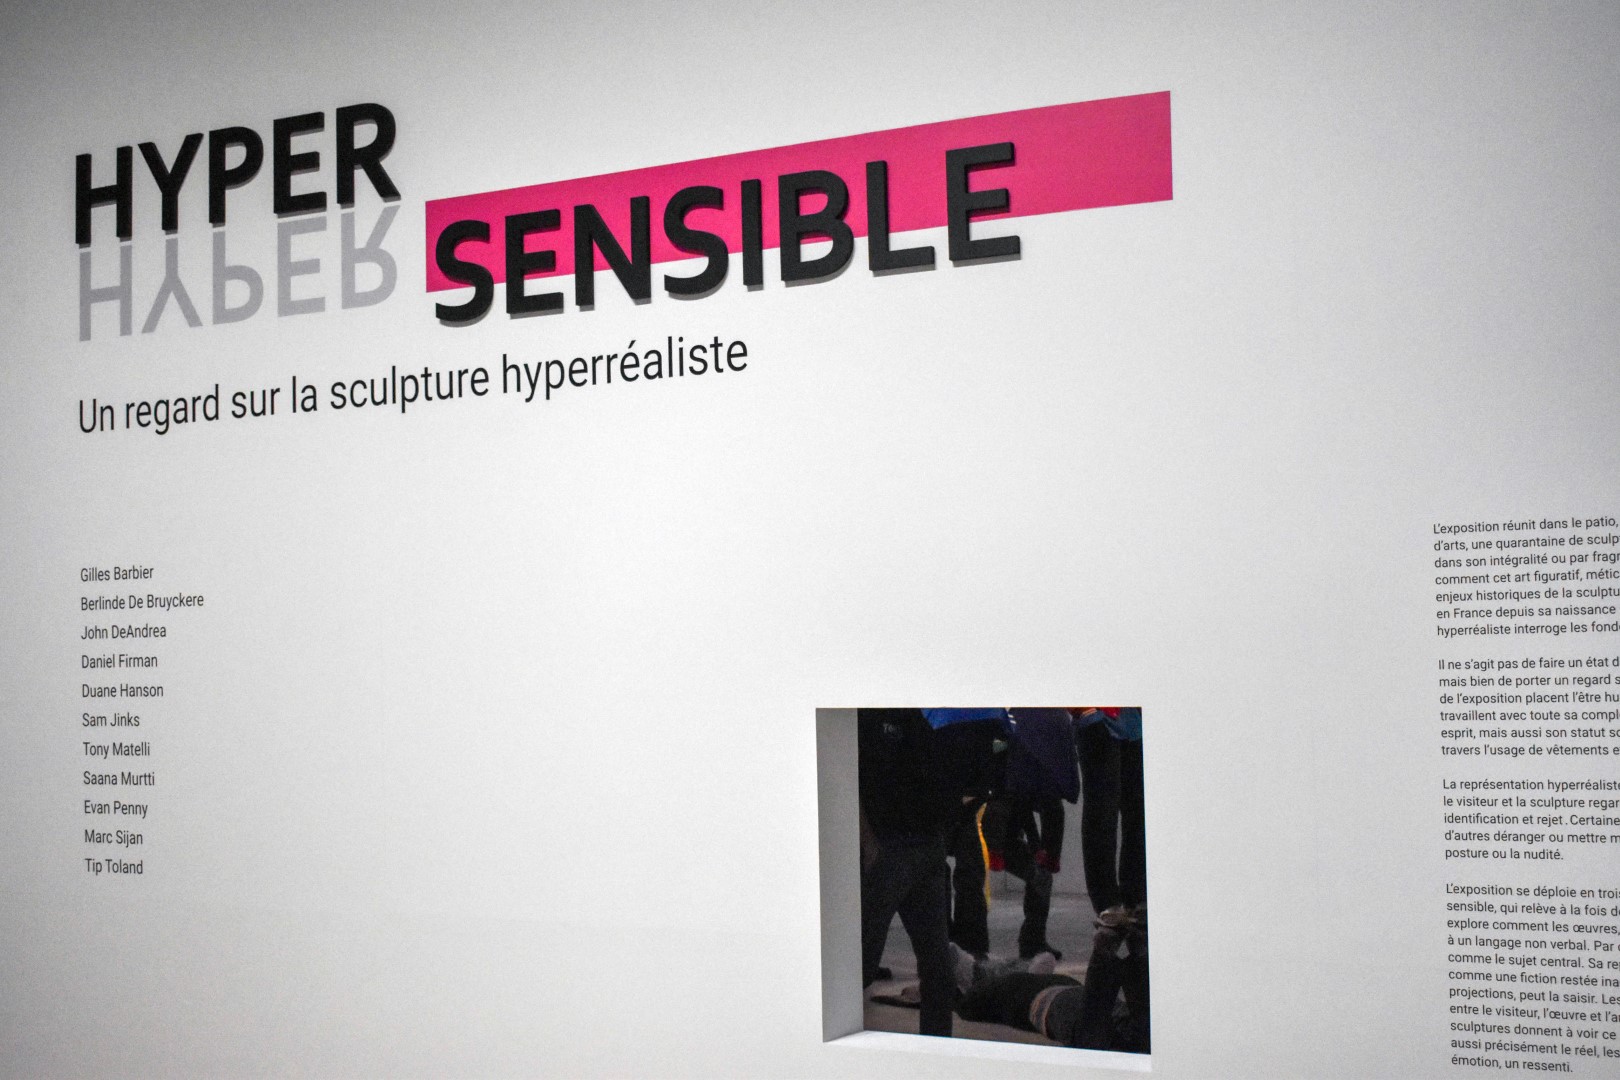 Musée d'arts de Nantes, "Hyper sensible" exhibition, Nantes, July 2023